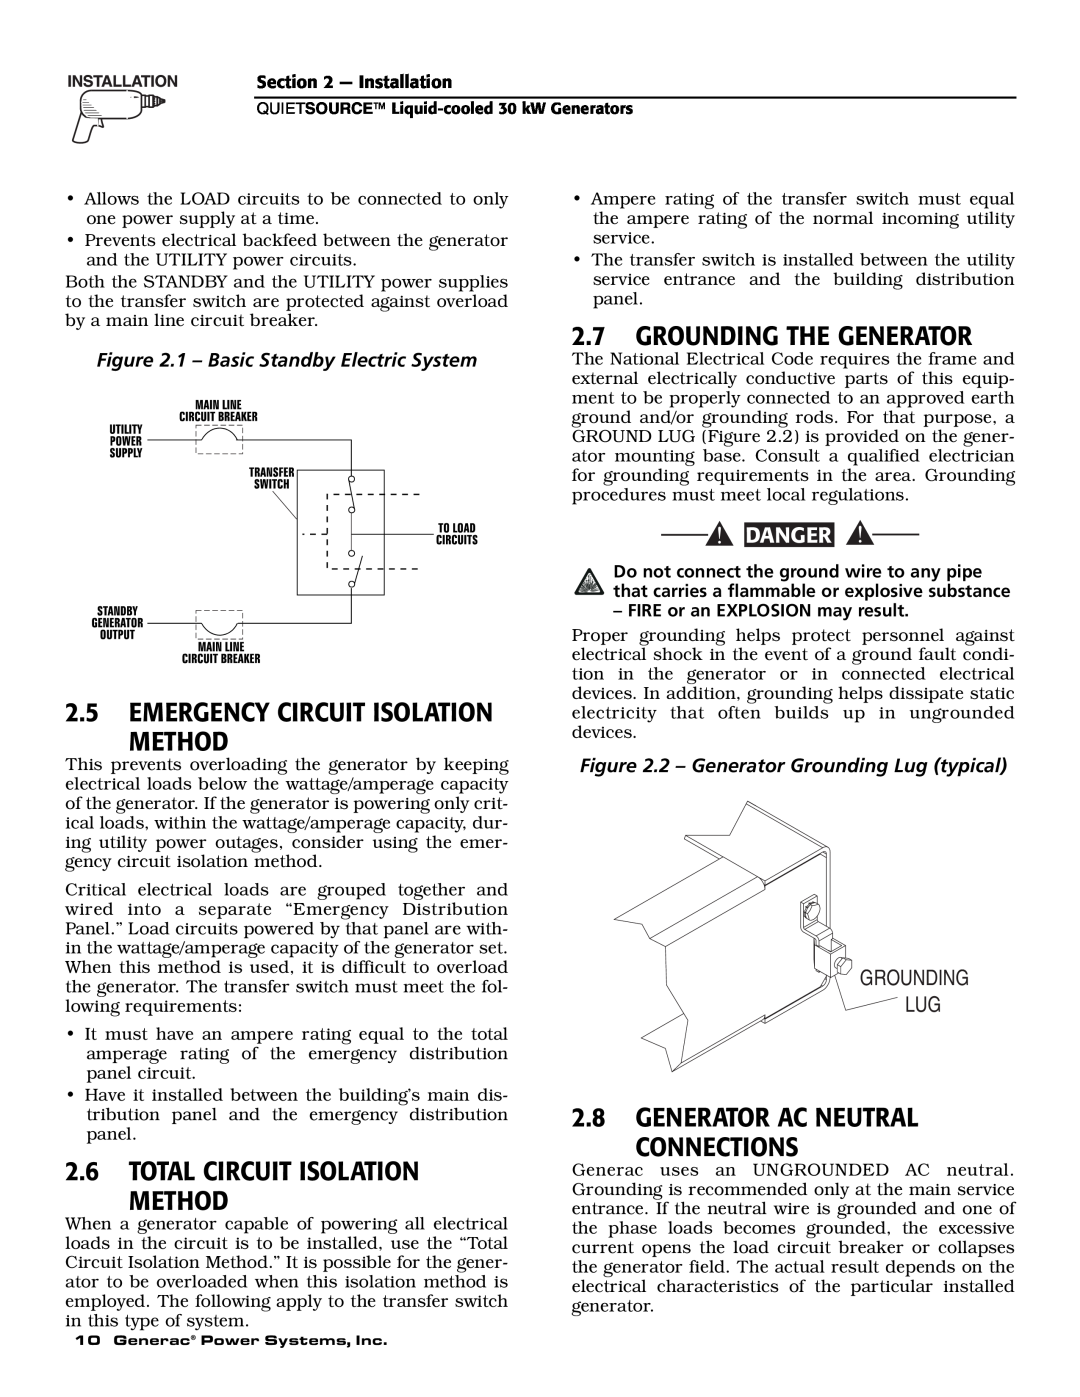 Generac Power Systems 004917-3 2.5EMERGENCY CIRCUIT ISOLATION METHOD, 2.6TOTAL CIRCUIT ISOLATION METHOD, Grounding Lug 